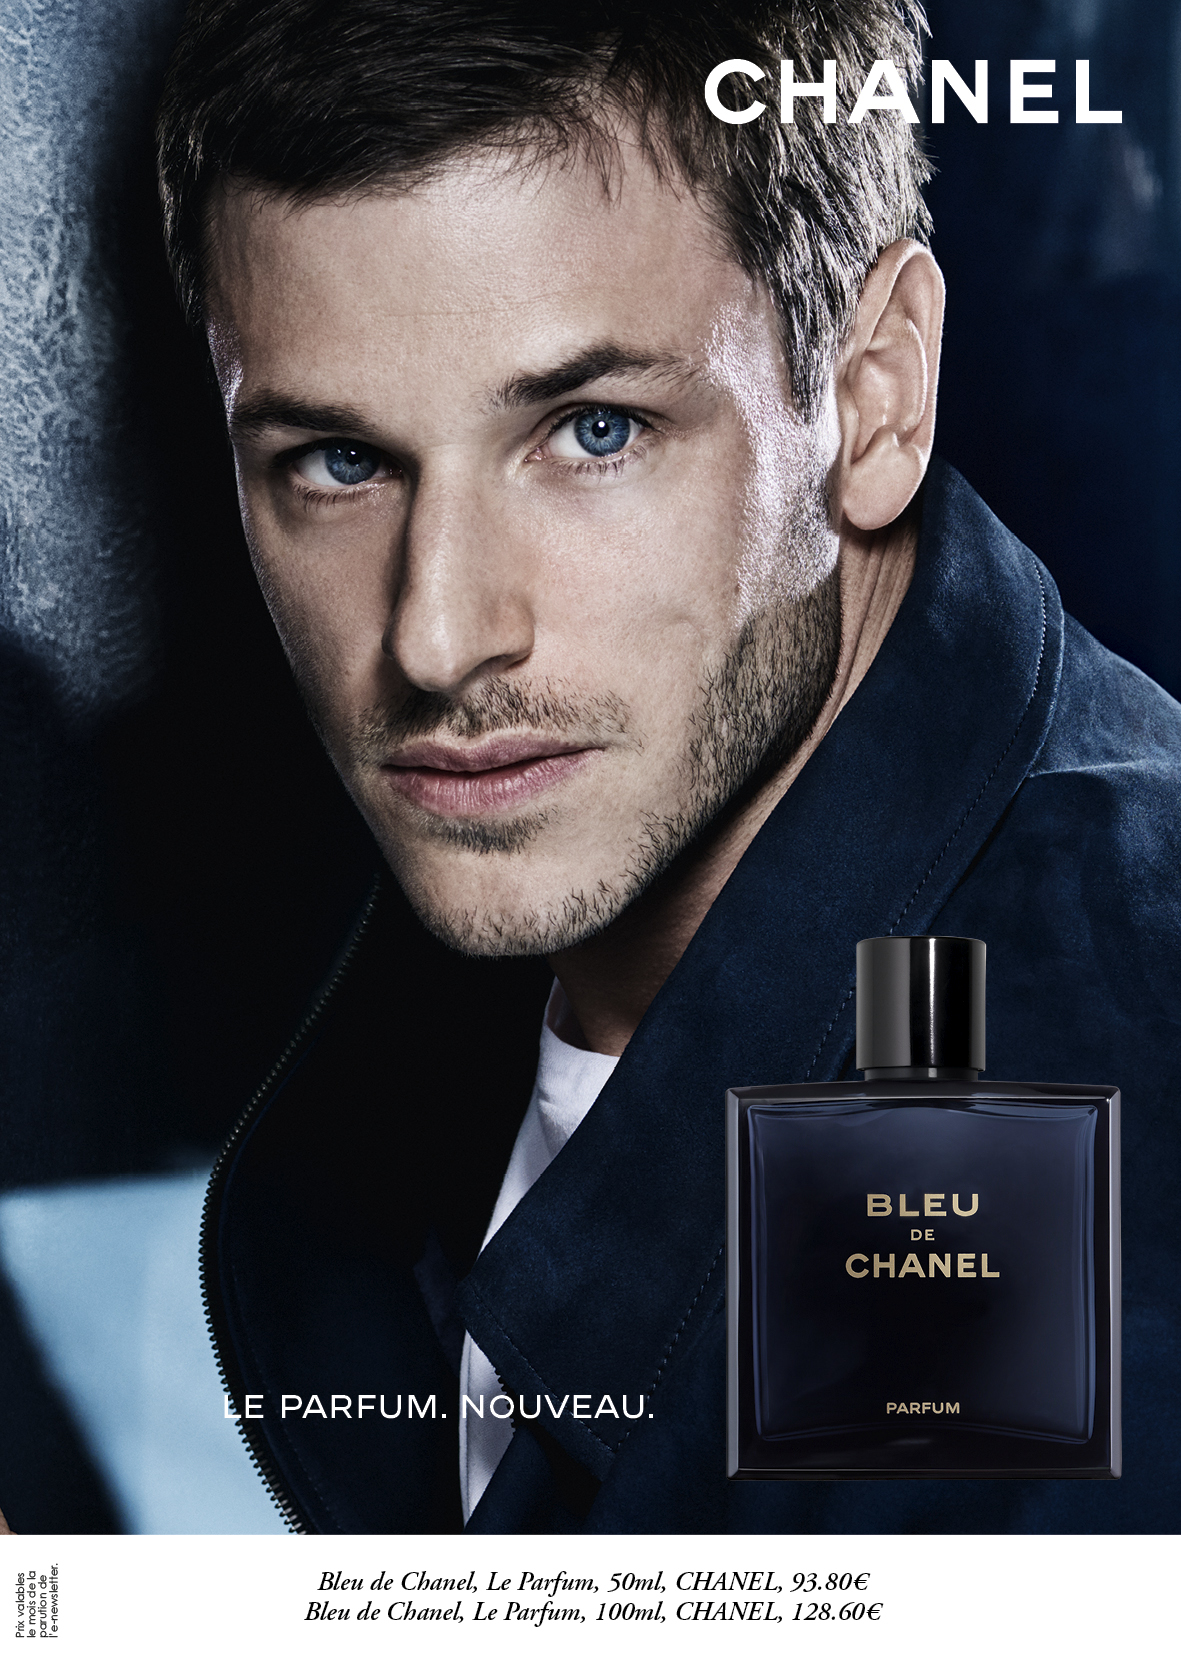 Bleu de Chanel, Le Parfum, CHANEL - Paris 8